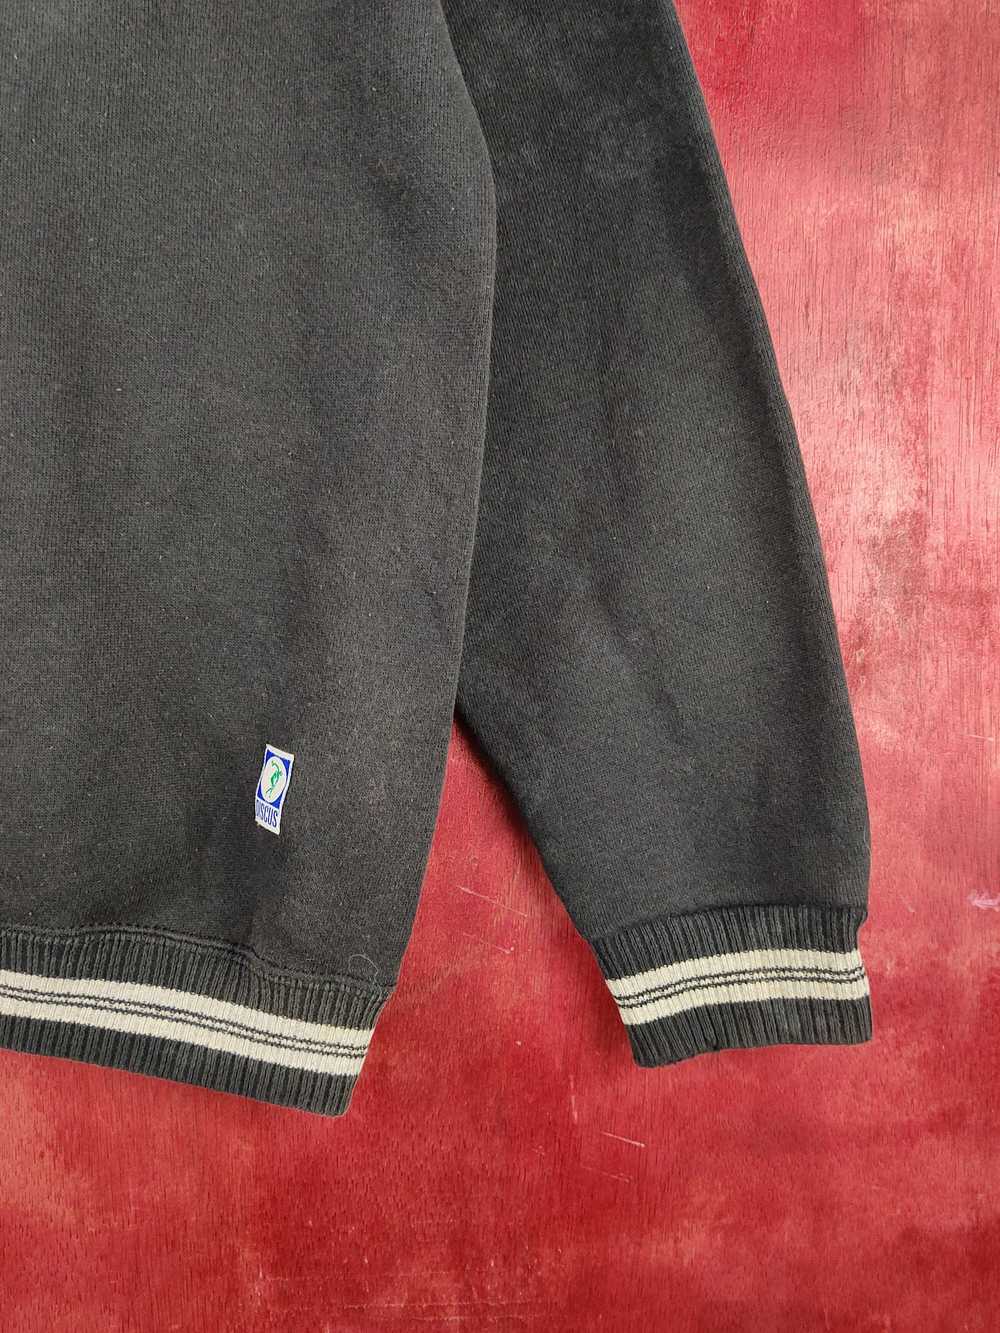 Streetwear × Vintage Discus Black Faded Sweatshir… - image 6